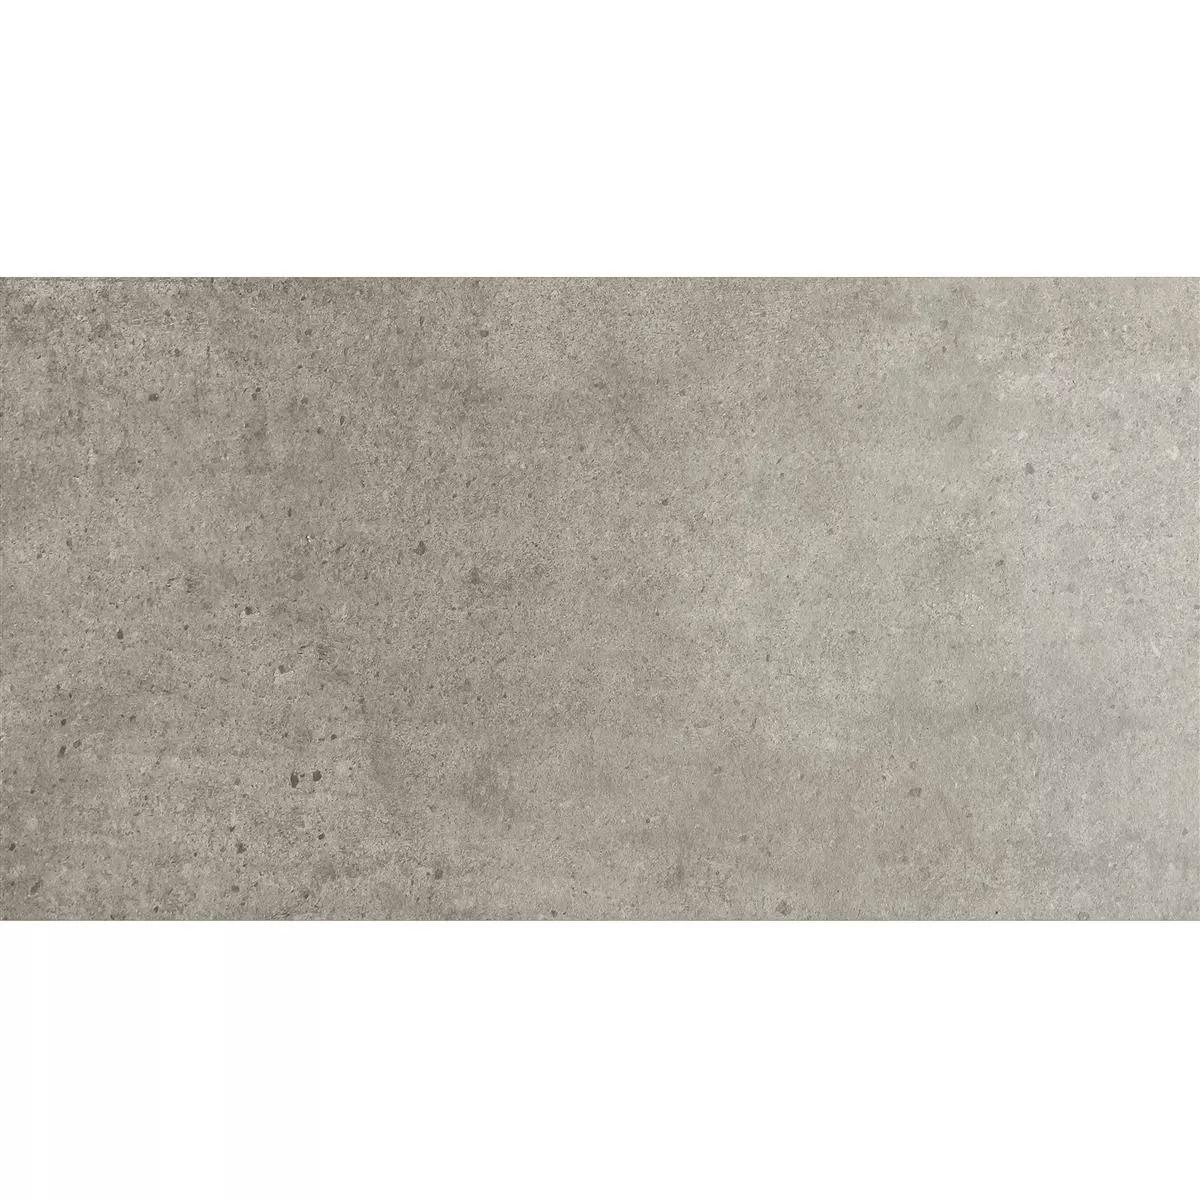 Πλακάκια Δαπέδου Πέτρινη Όψη Despina Ανοιχτό Γκρι 30x60cm